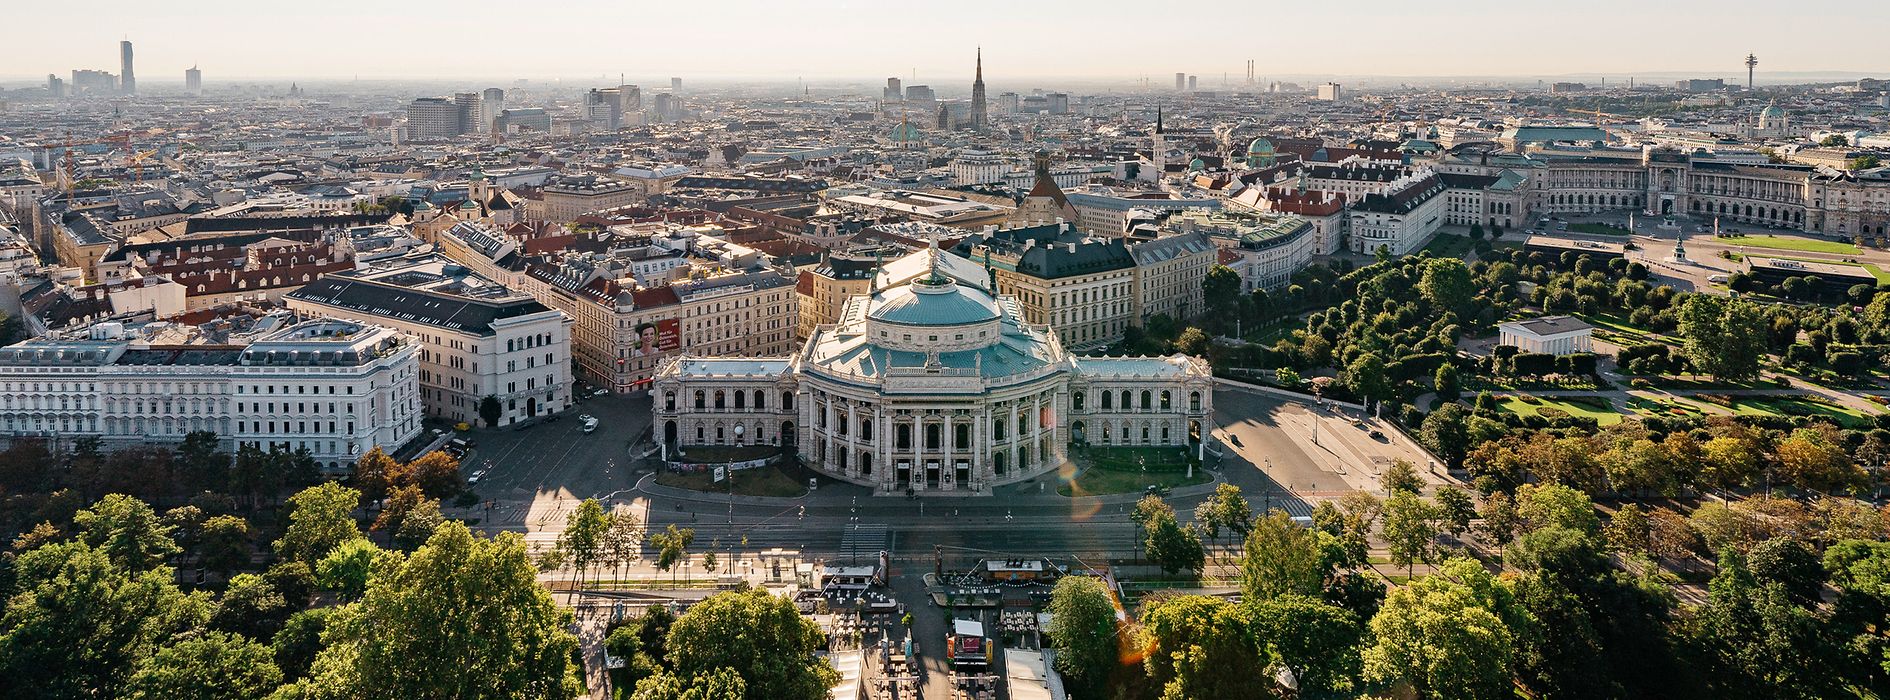 Blick vom Rathaus aufs Burgtheater